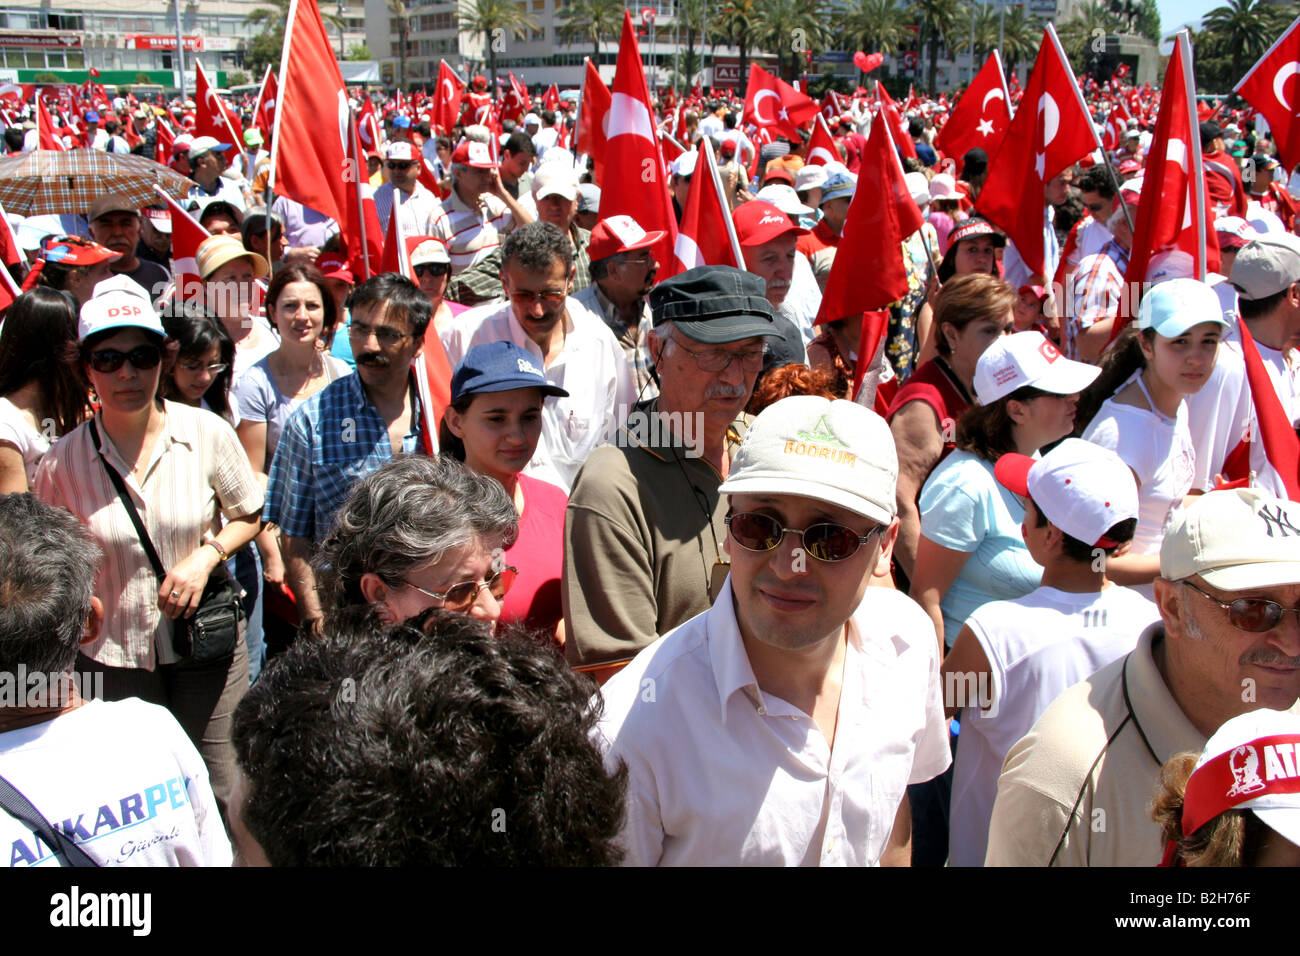 Personnes marche avec des drapeaux turcs dans l'pro rally laïque à Izmir Turquie 13 mai 2007 Banque D'Images